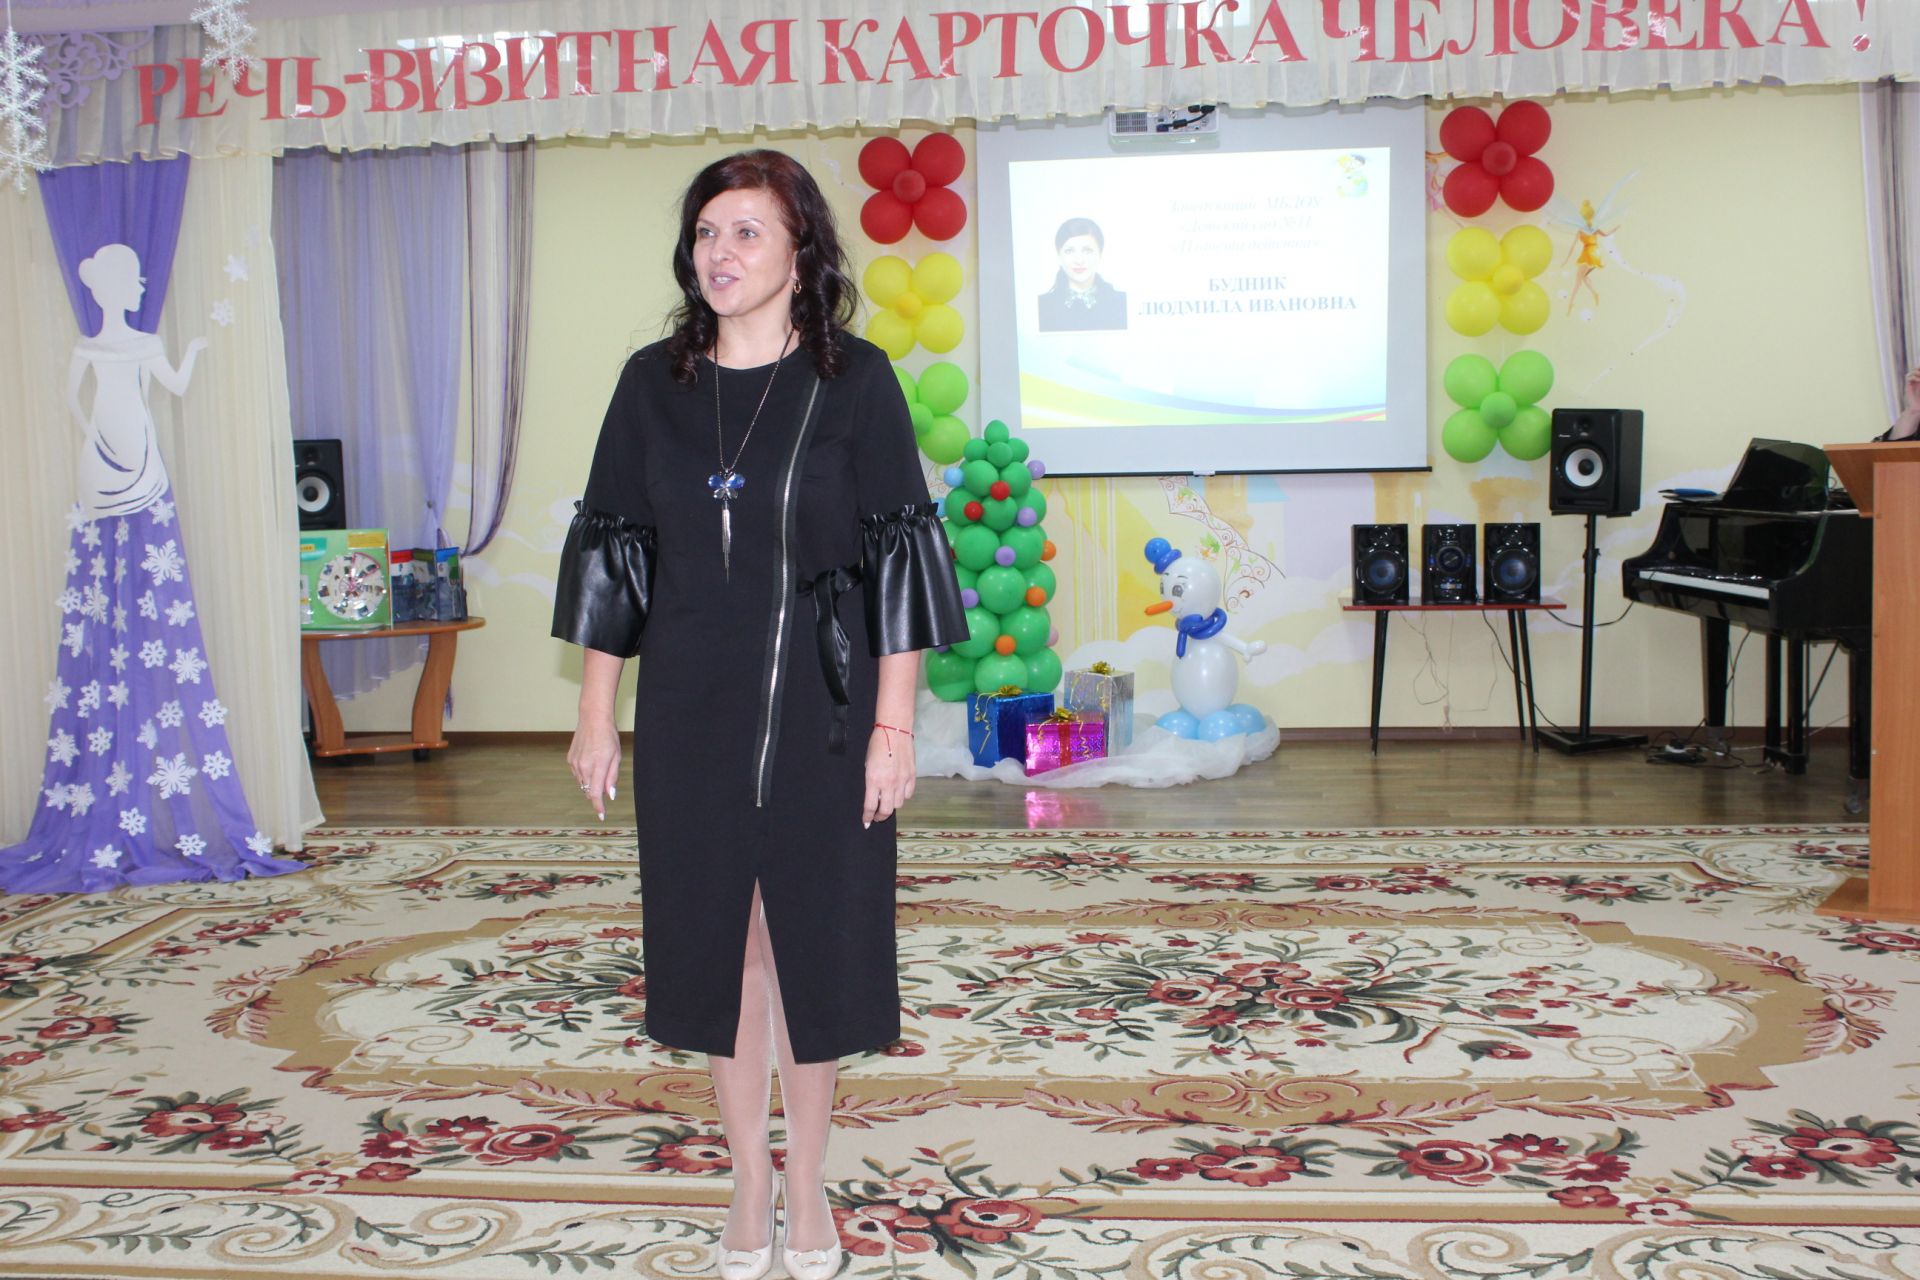 В Менделеевске состоялась региональная конференция педагогов дошкольных образовательных учреждений